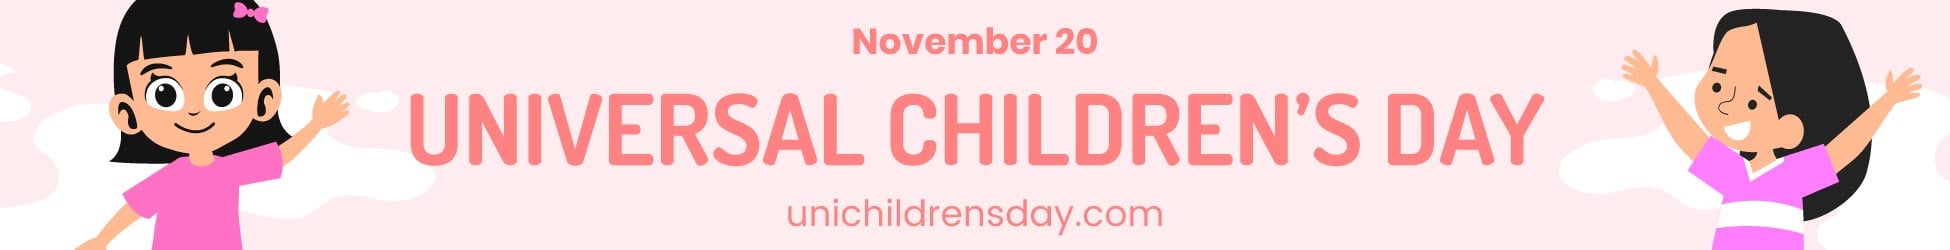 Universal Children’s Day Website Banner in Illustrator, PSD, EPS, SVG, JPG, PNG